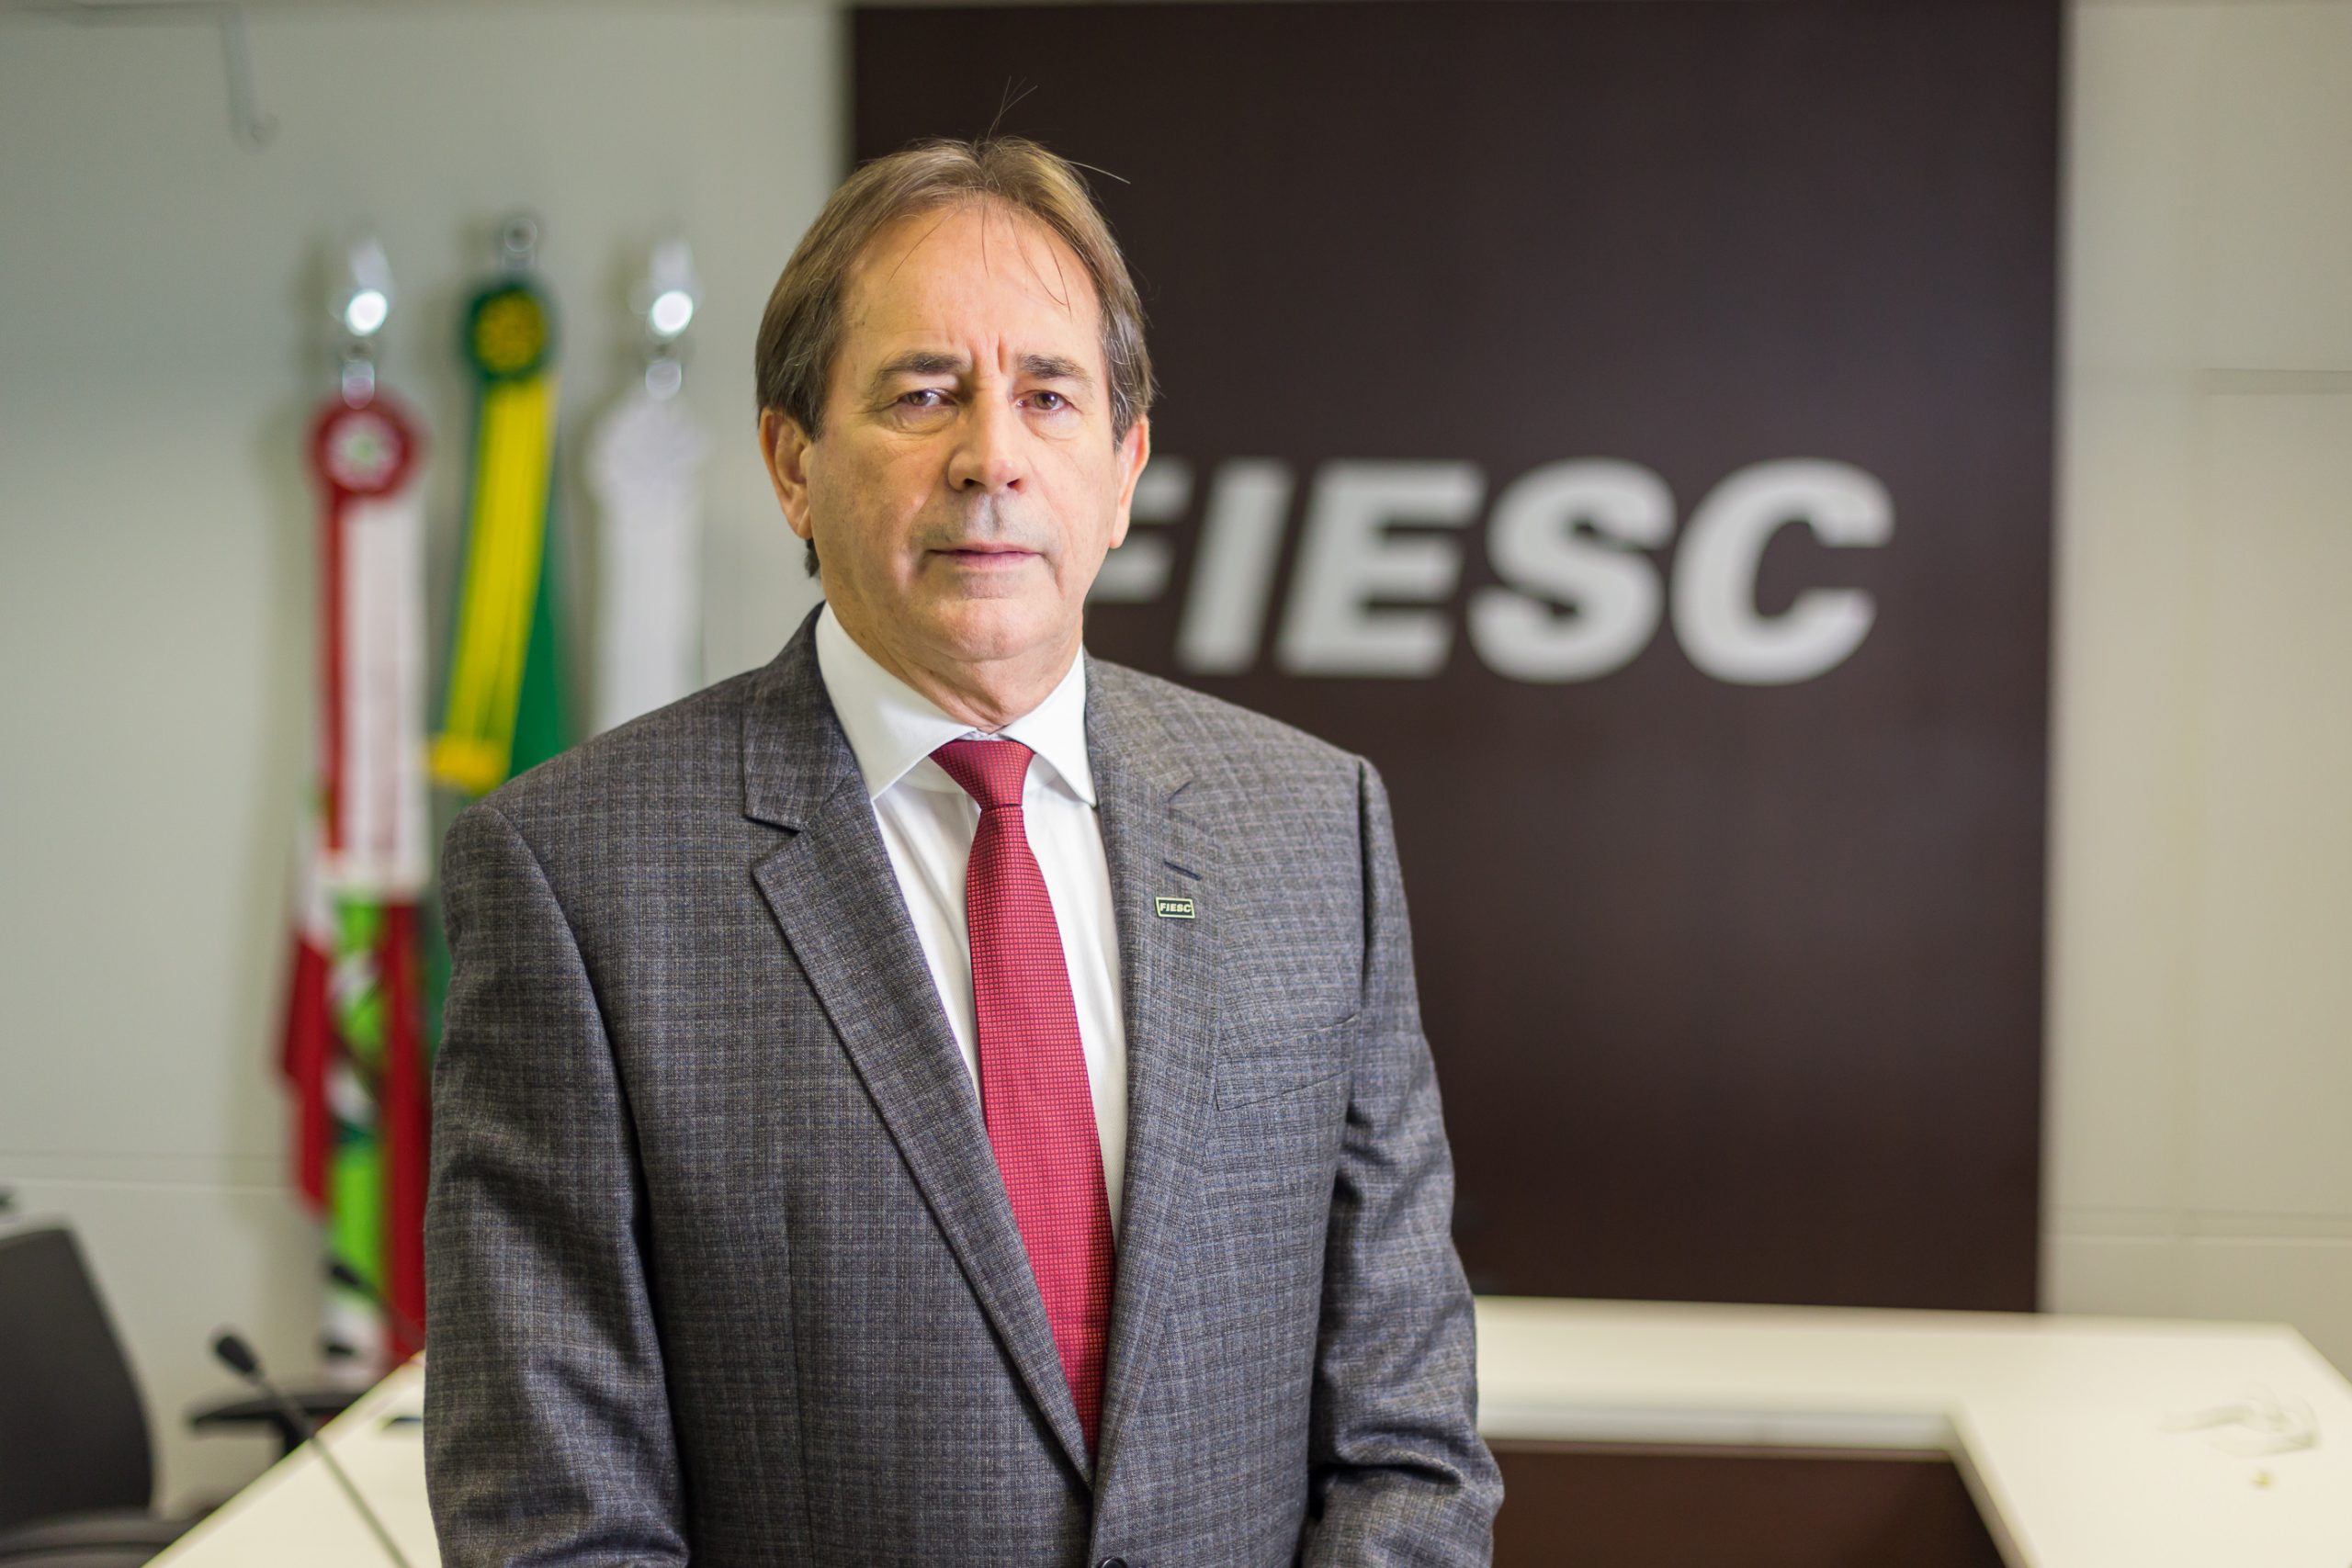 Fiesc anuncia investimento milionário em Criciúma